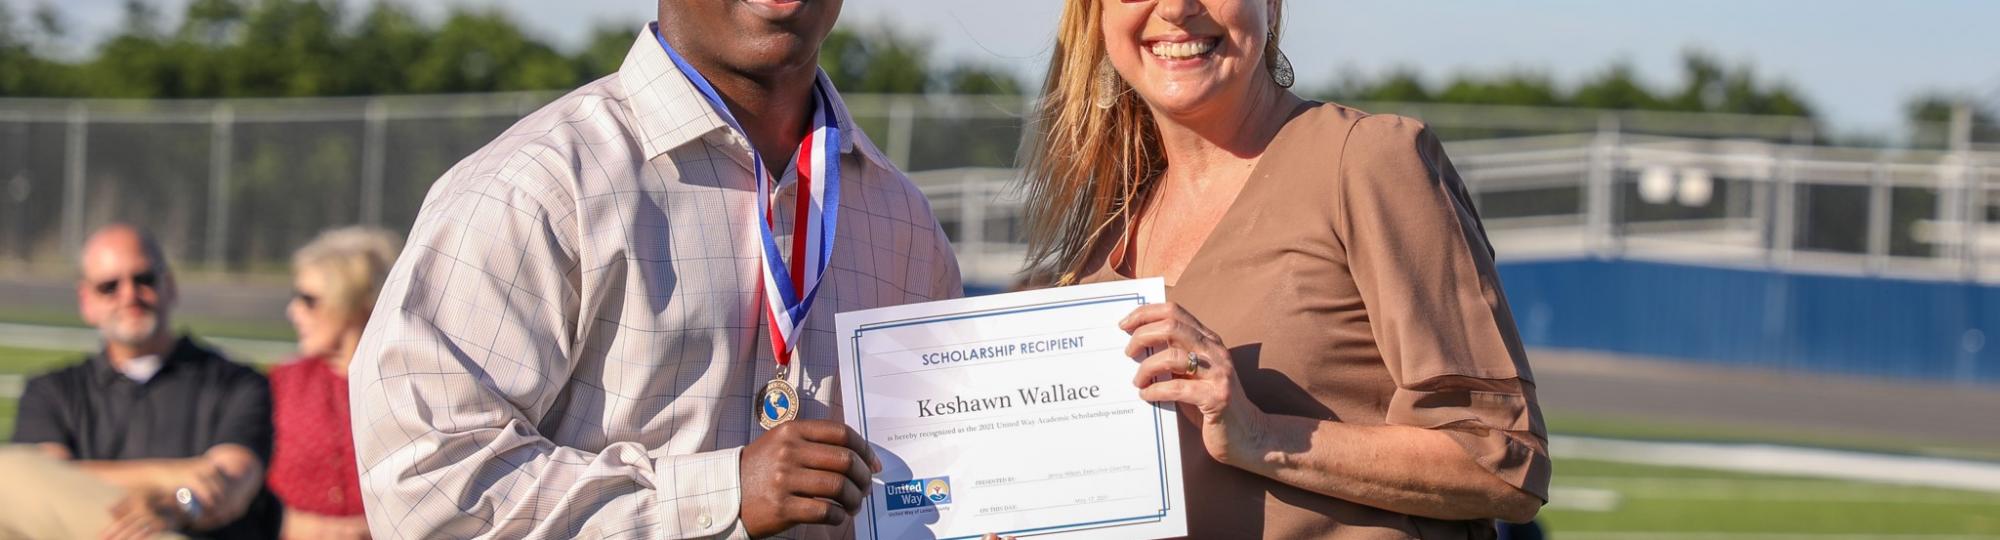 2021 Scholarship Winner Keshawn Wallace